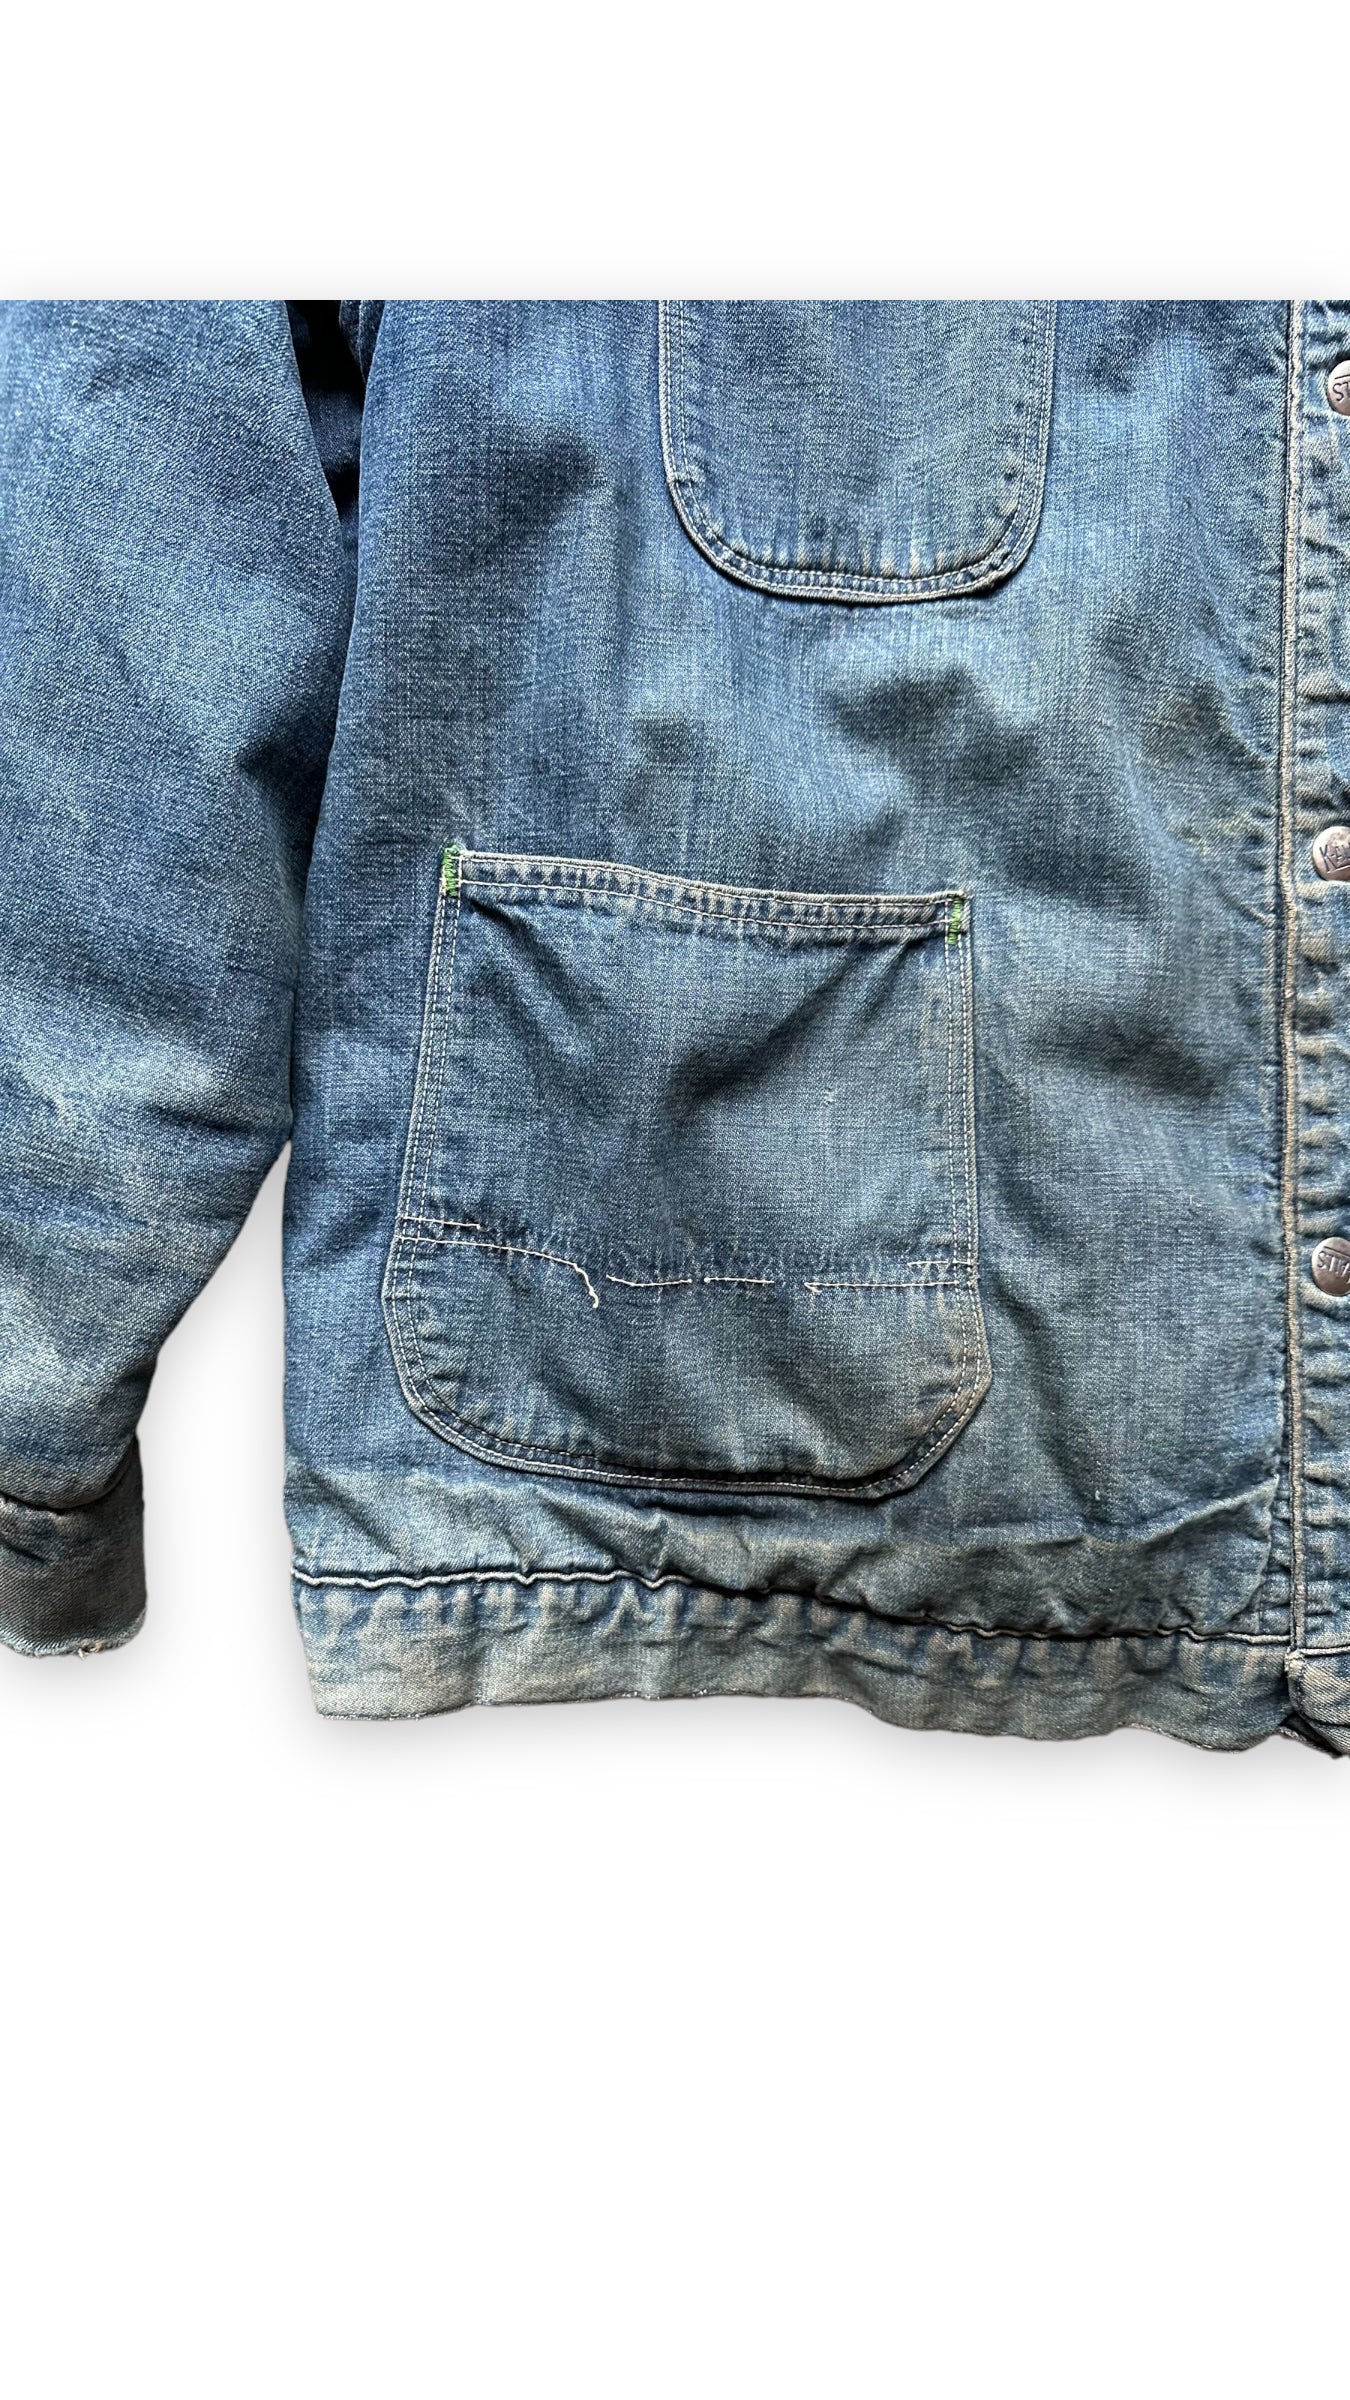 Pocket View on Vintage K-Alls Brand Blanket Lined Denim Chore Jacket SZ XL | Seattle Vintage Workwear | Barn Owl Vintage